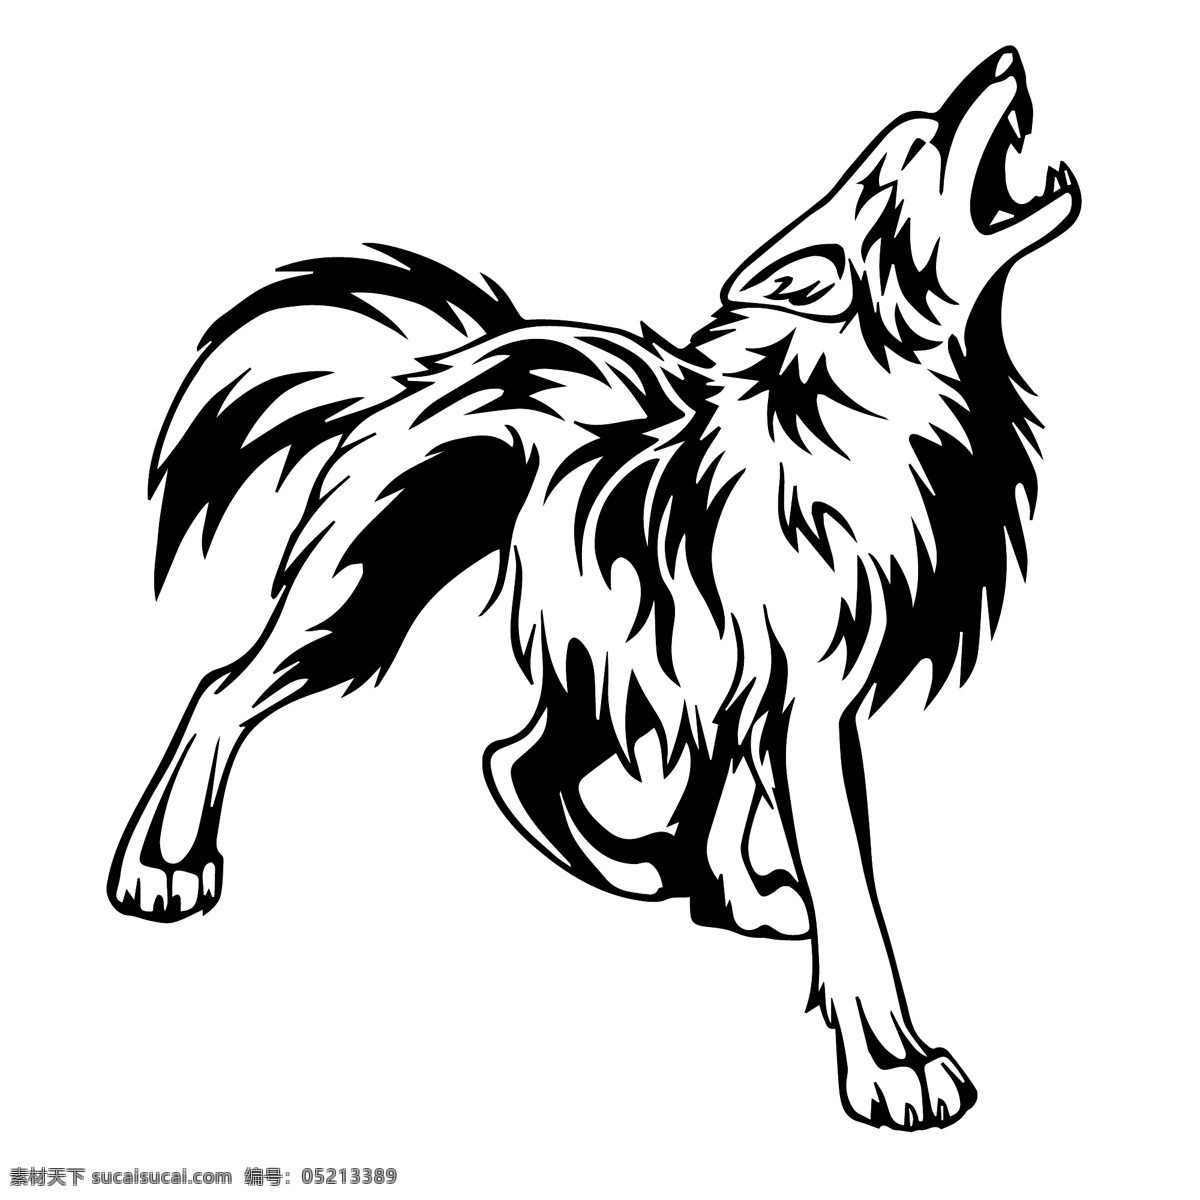 矢量狼王 矢量 苍狼 狼王 霸气 美术绘画 文化艺术 标识标志图标 狼的精神 狼 团队精神 矢量素材 野生动物 生物世界